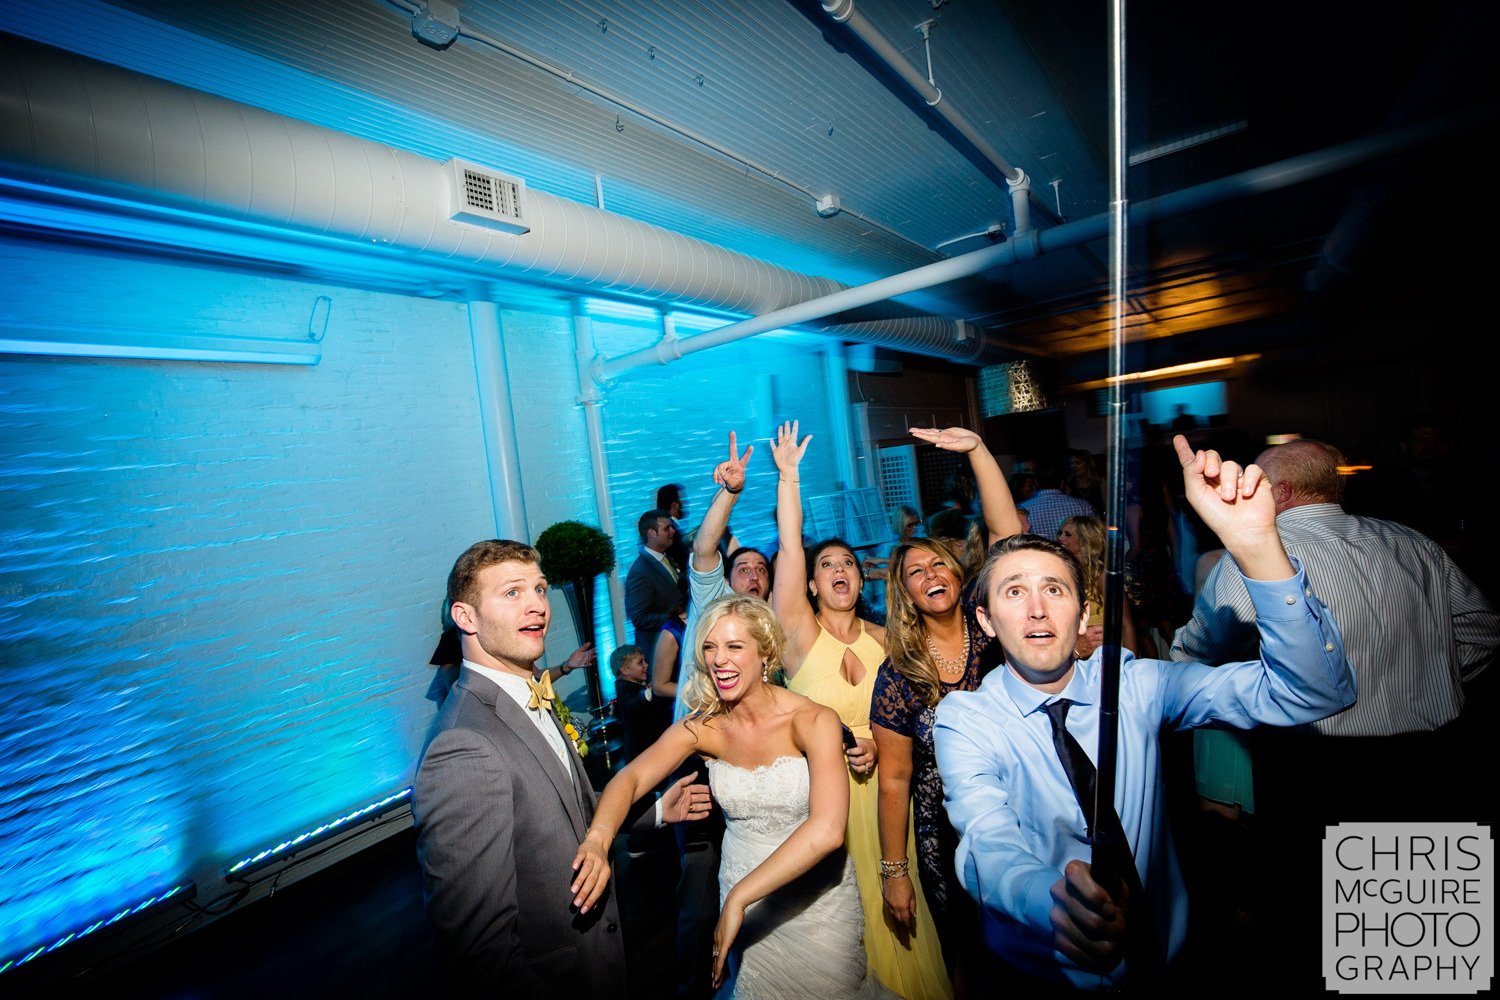 selfie stick at wedding reception